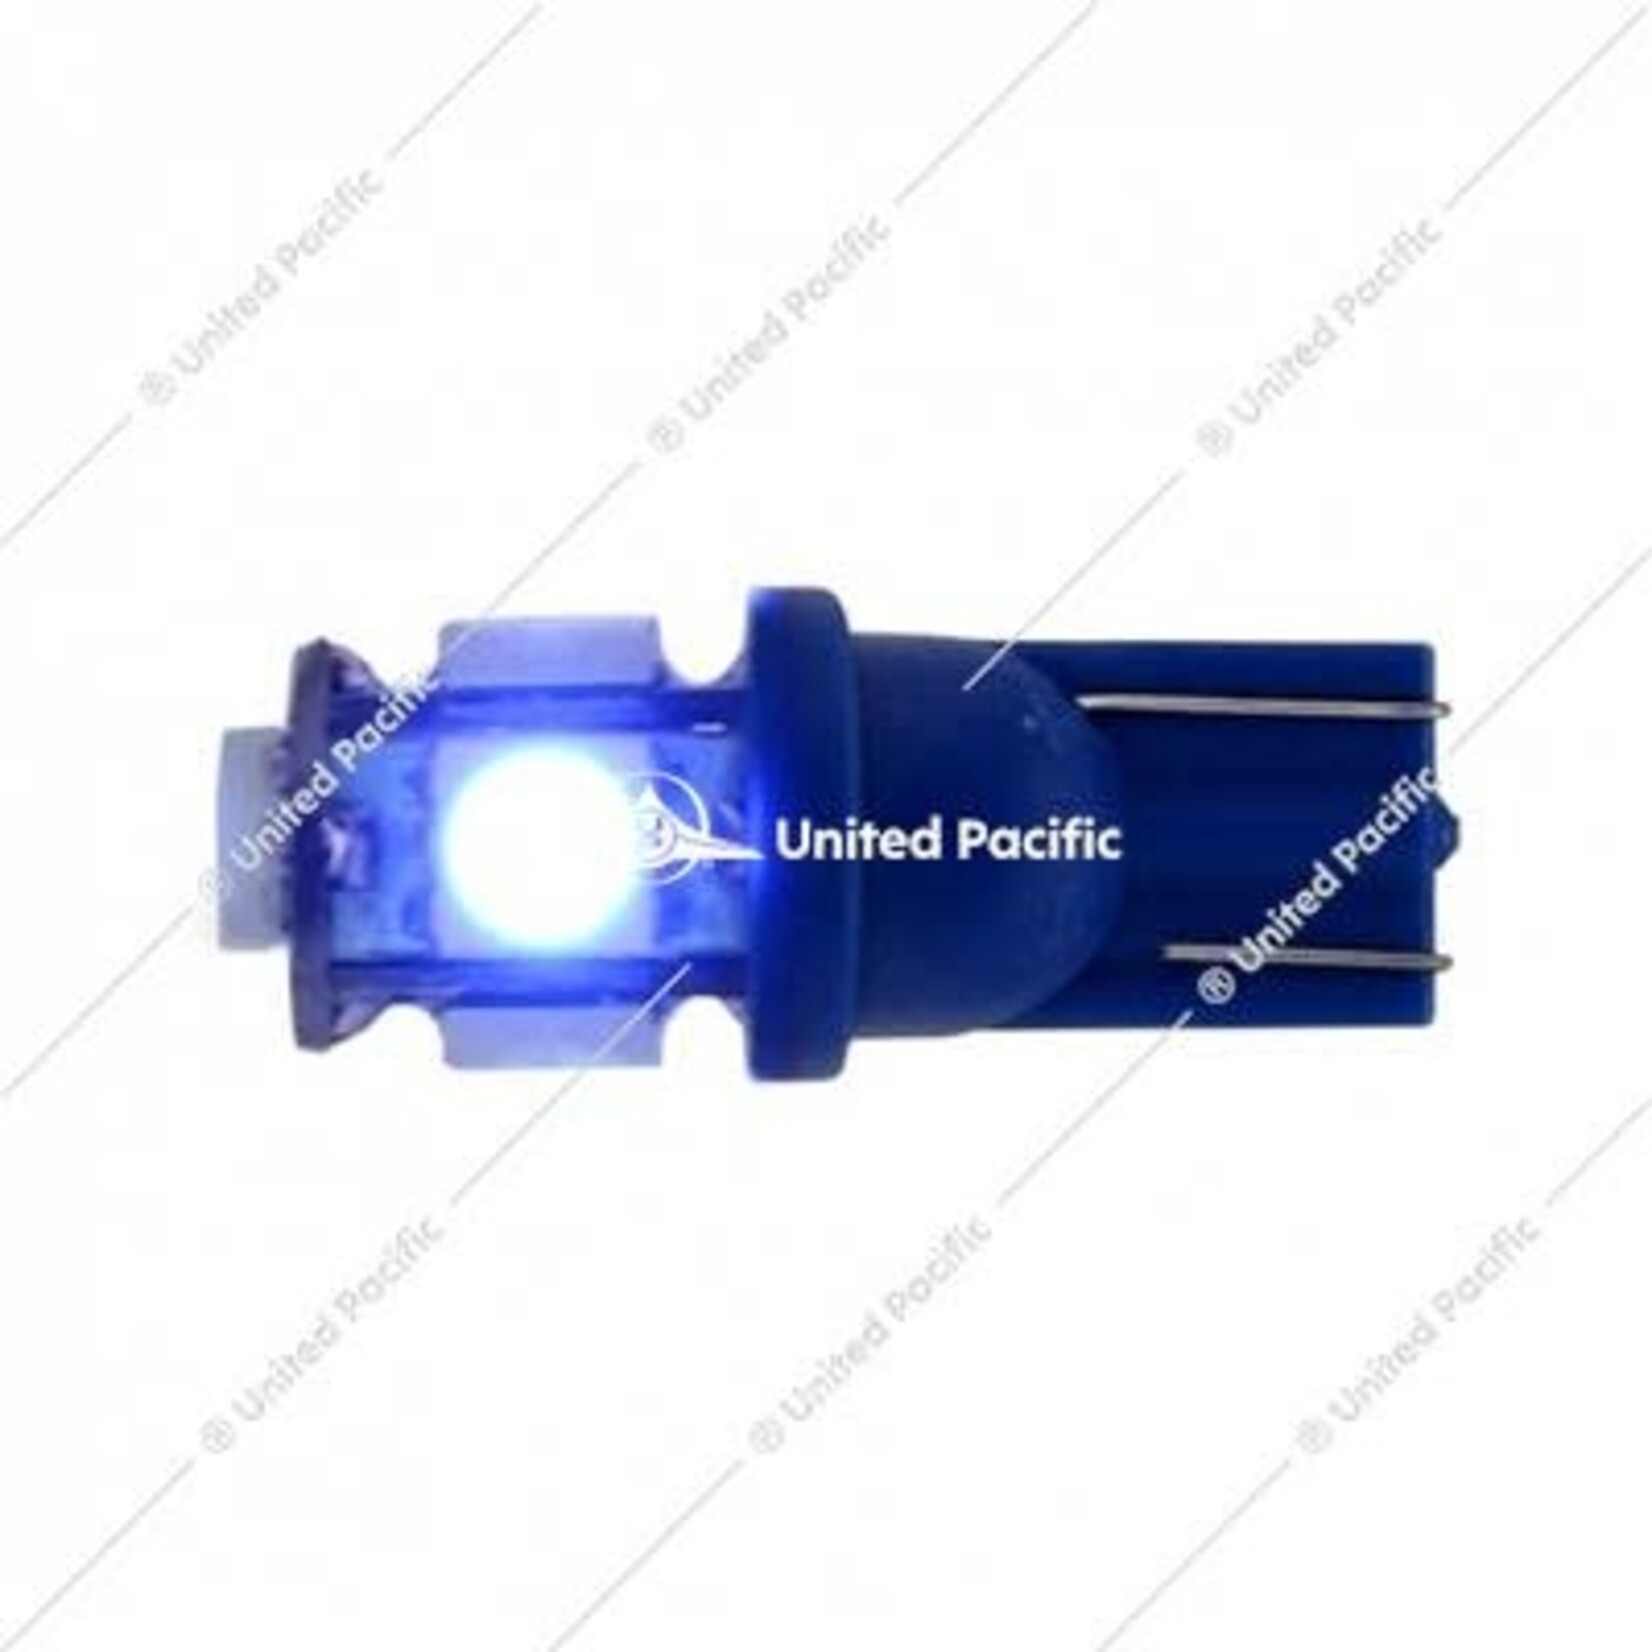 5 High Power LED 360 Degree 194 Bulb - Blue (2 Pack)